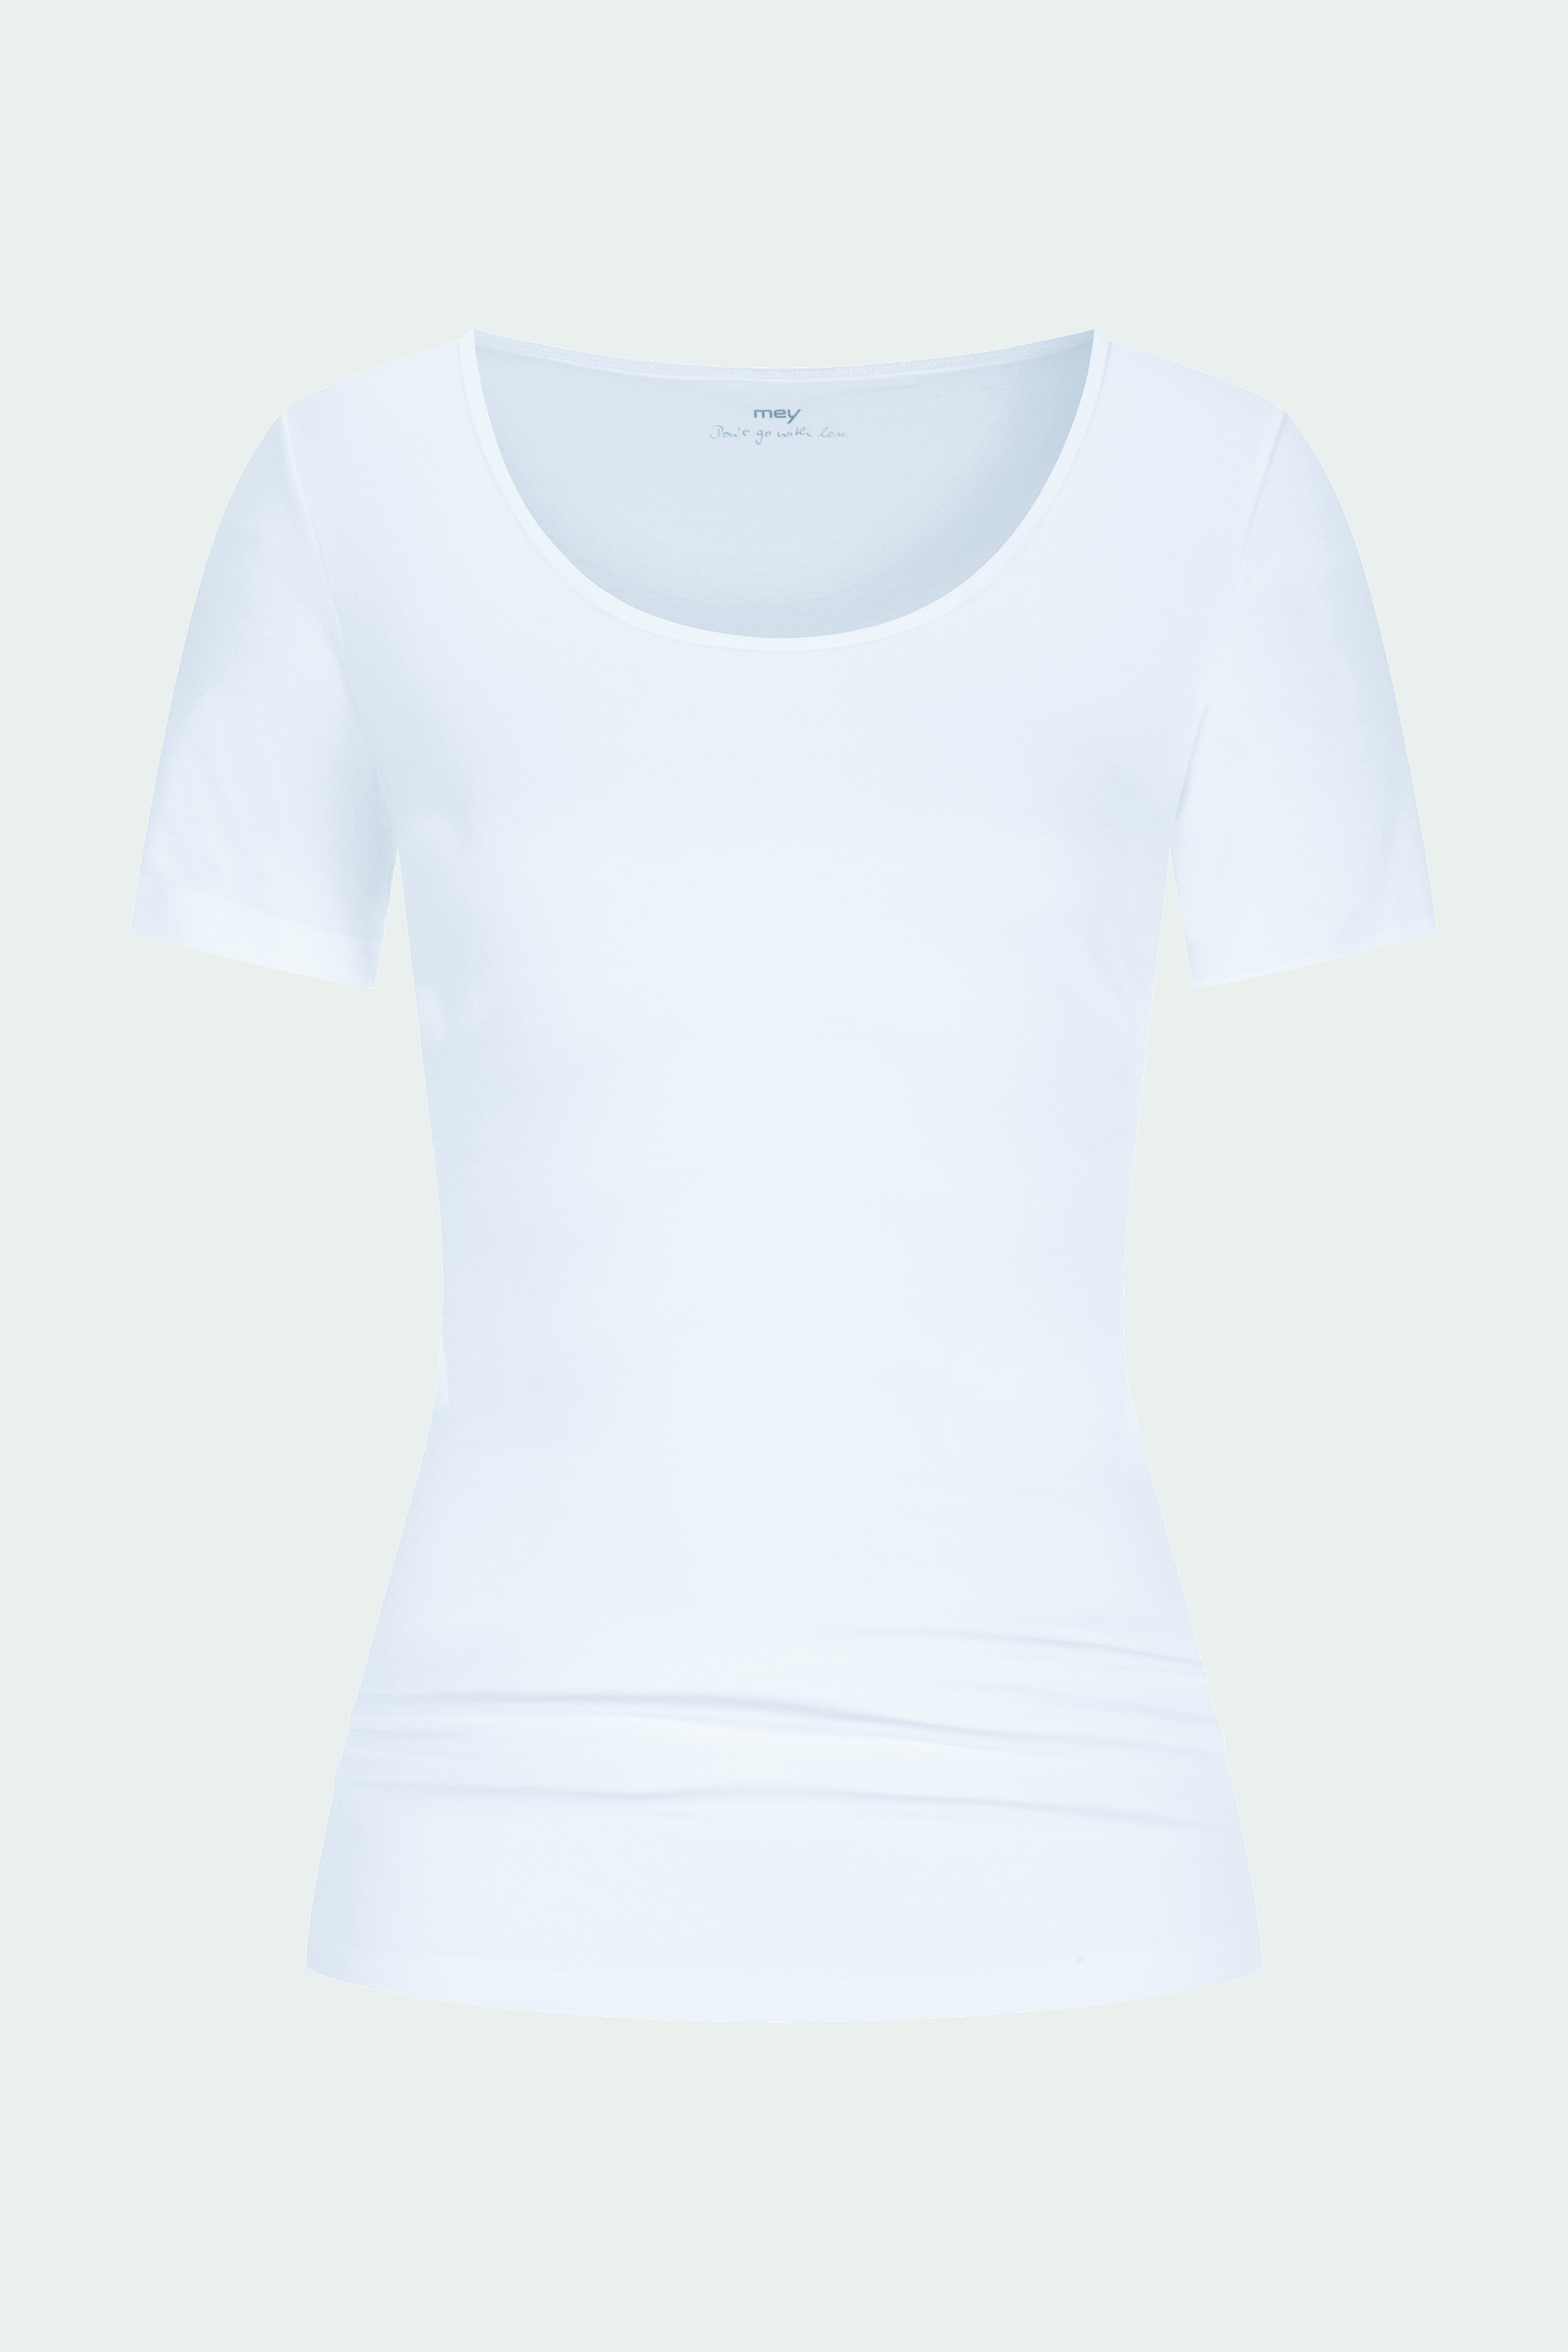 Shirt kurzarm Weiss Serie Cotton Pure Freisteller | mey®